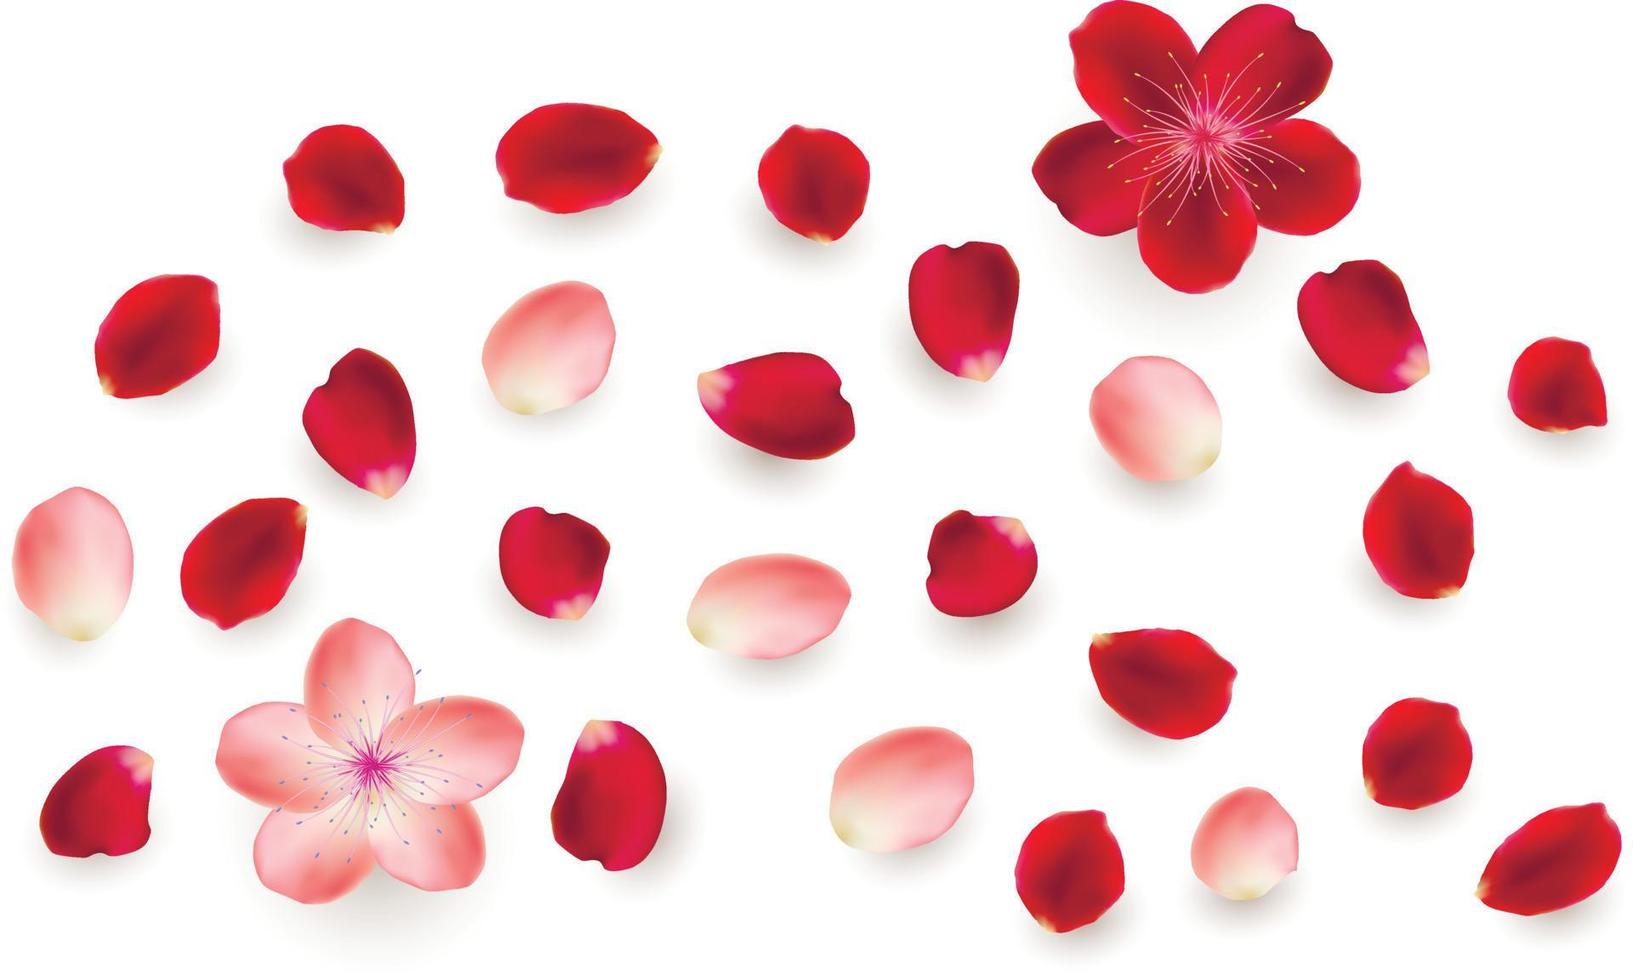 realistische vector-elementen set rozenblaadjes. rode en roze bloemblaadjes van rozenbloem vector